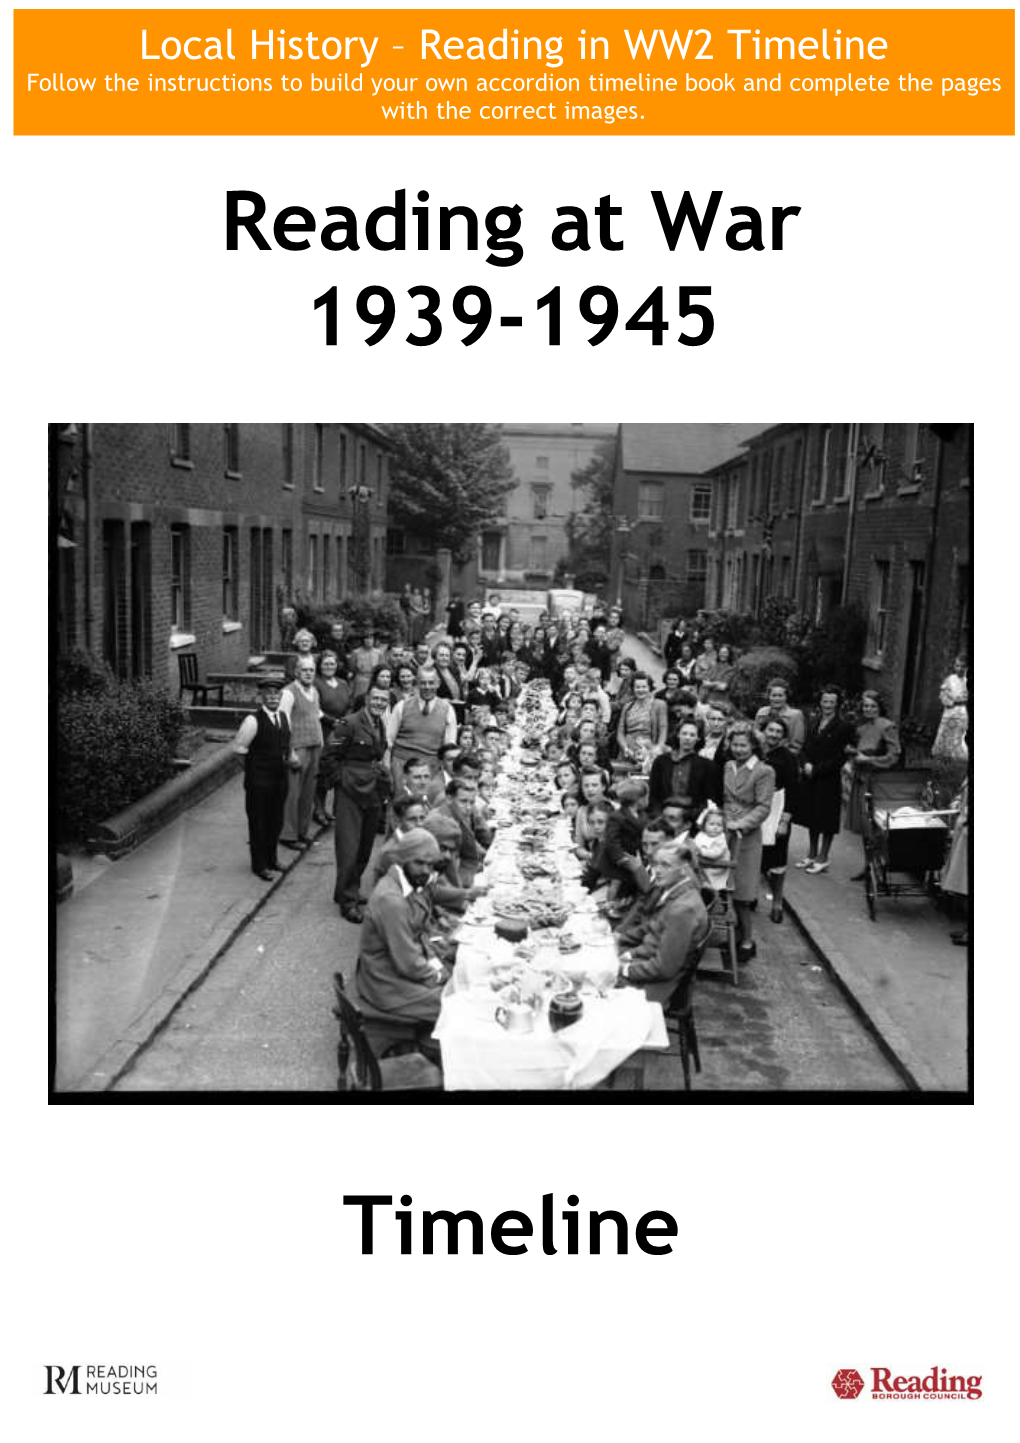 Reading at War 1939-1945 Timeline